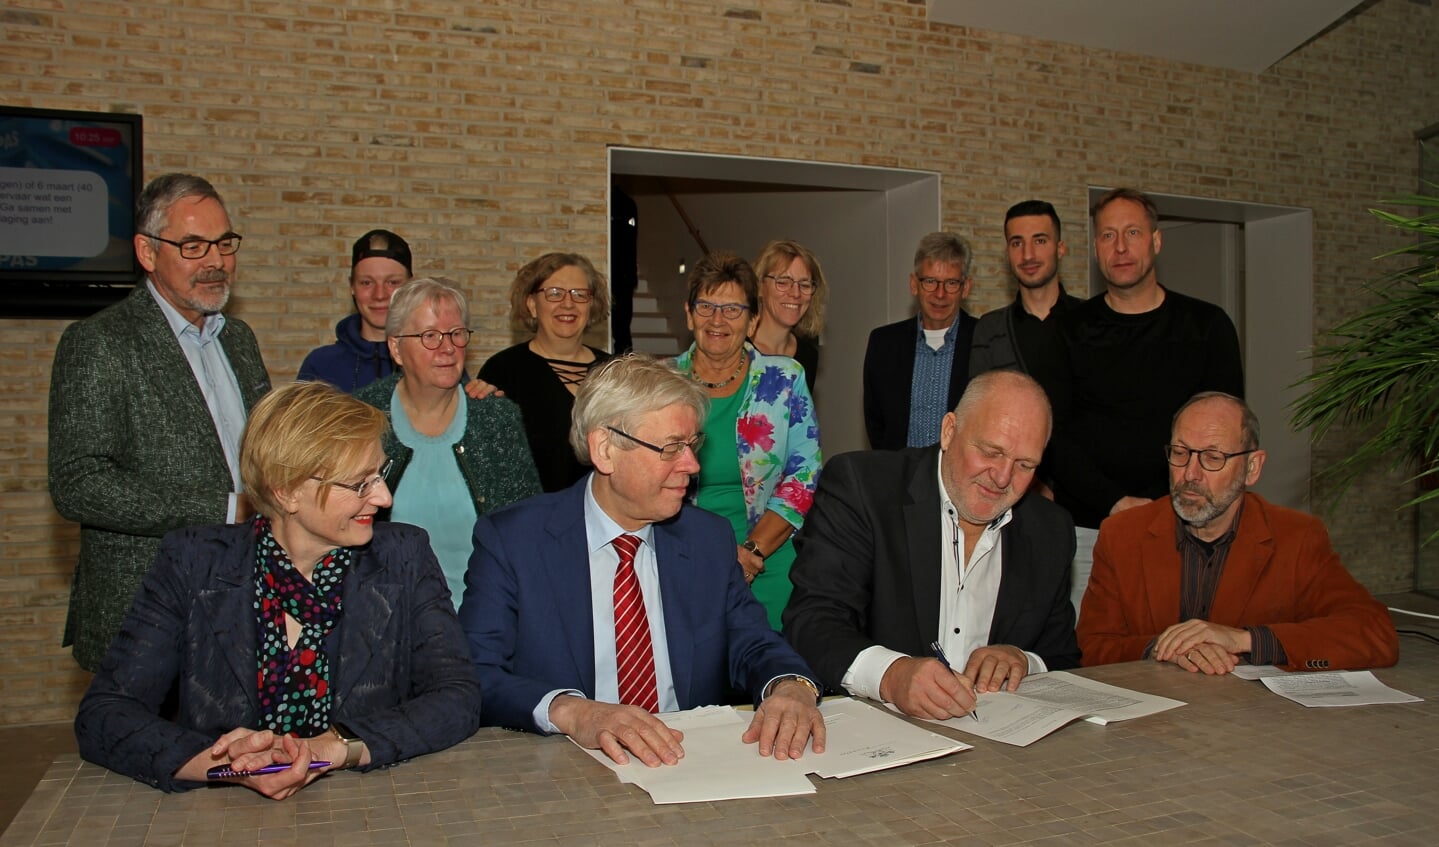 De akte van levering van De Kei in Steenderen wordt ondertekend door voorzitter Geert Postma. Foto: Liesbeth Spaansen